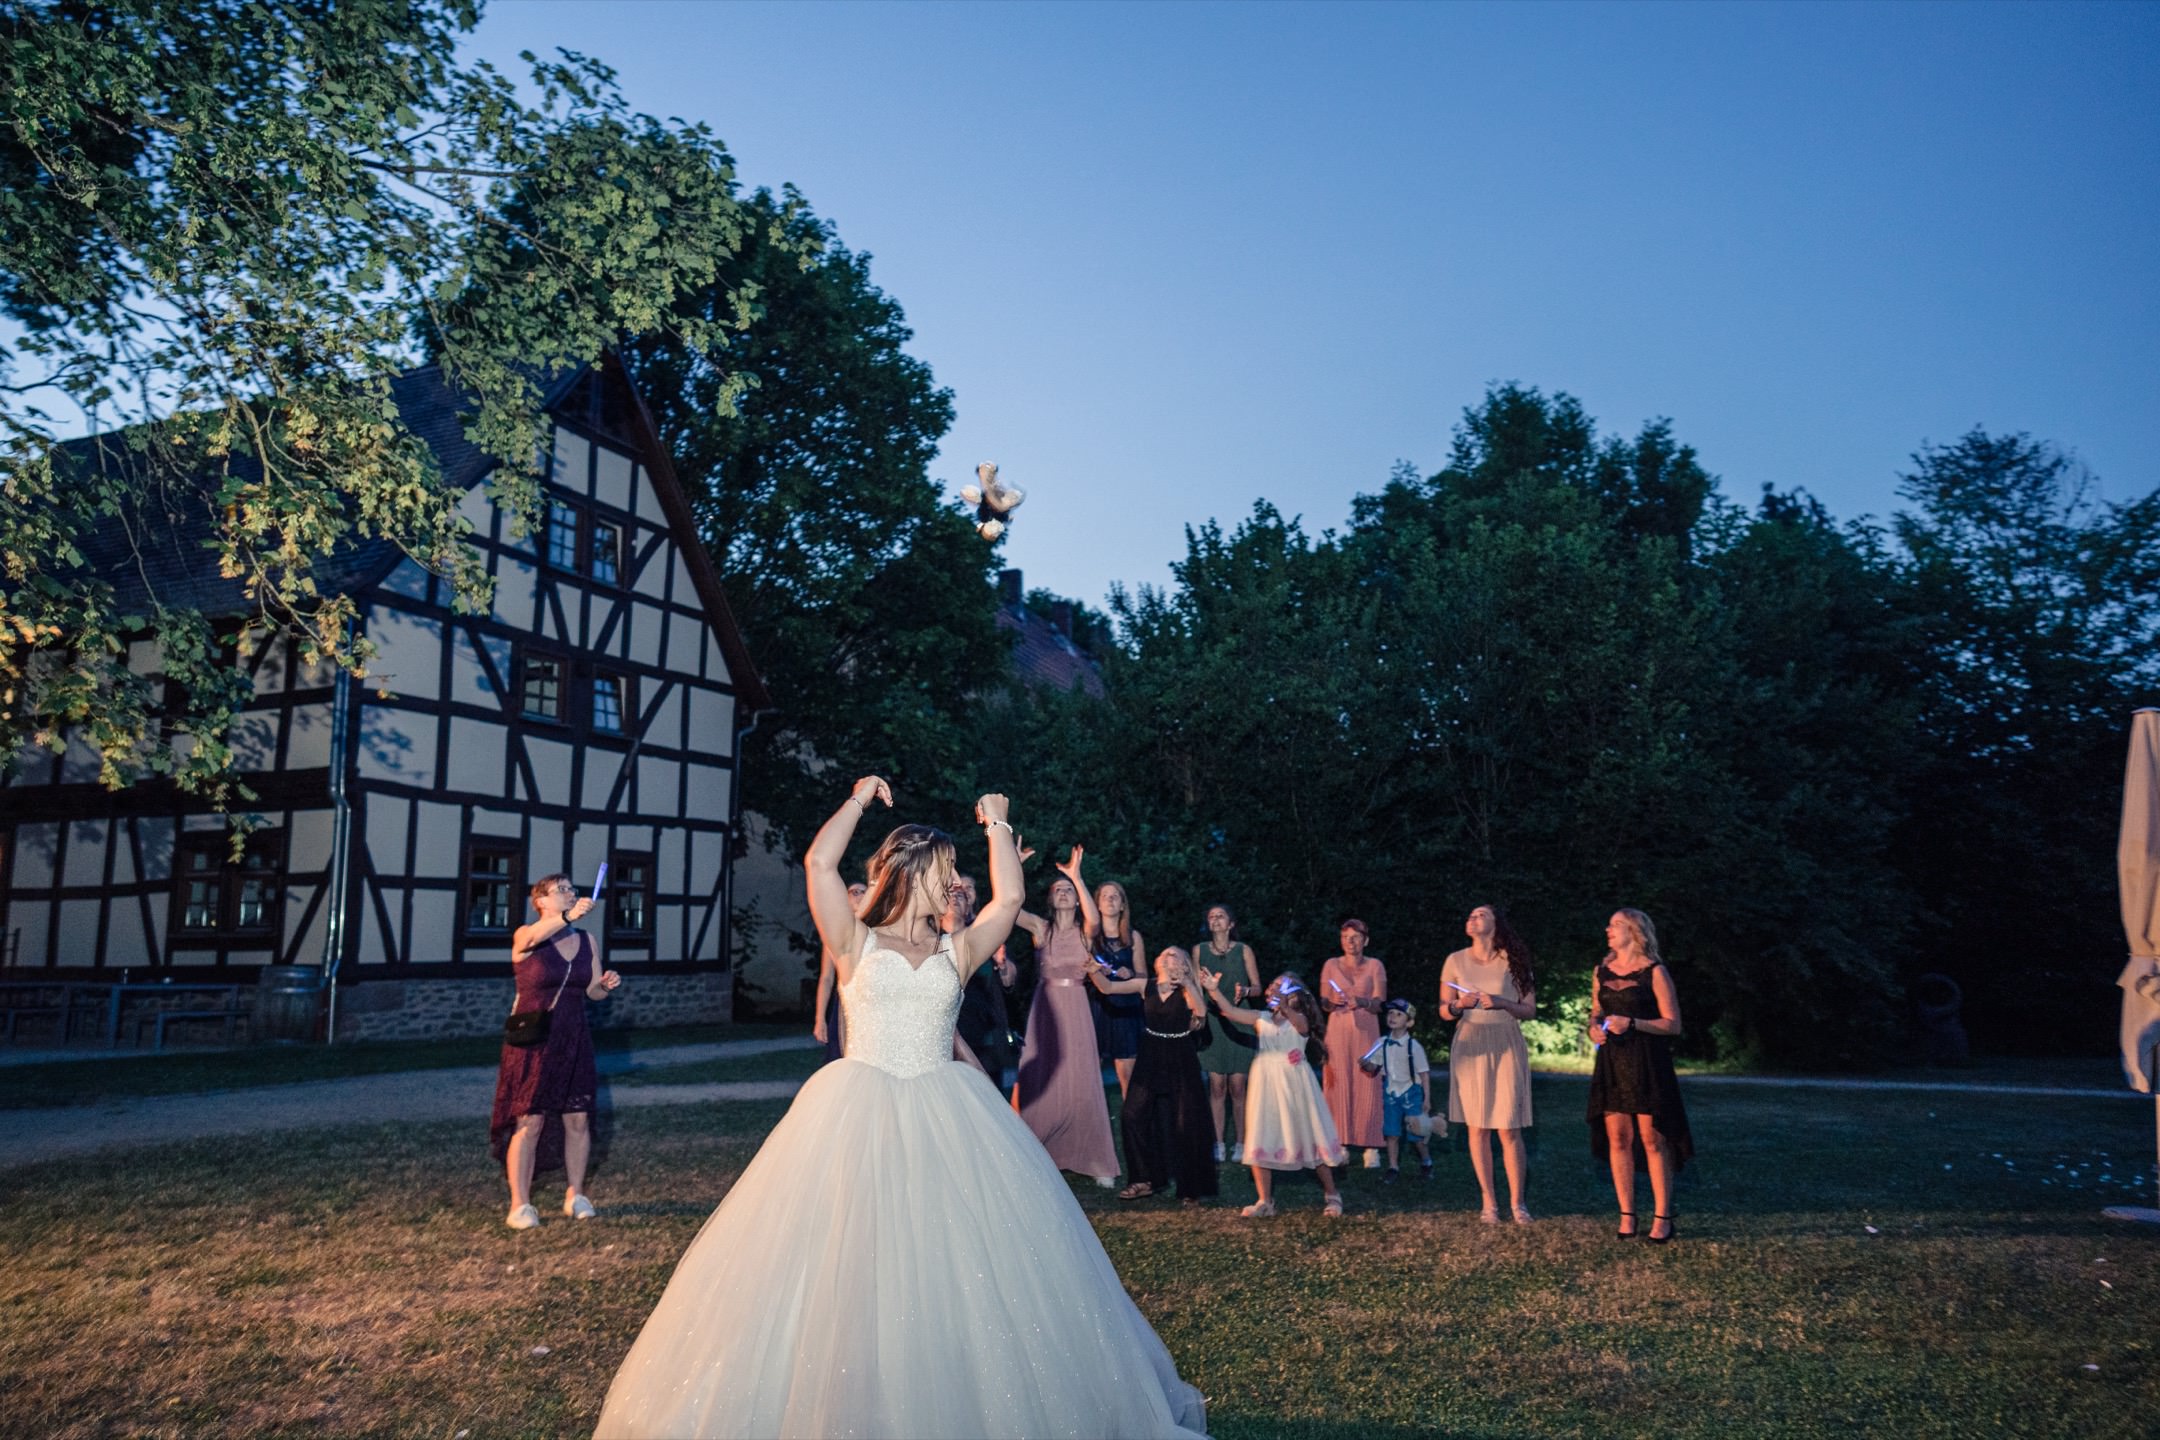 Eine Tradition bei der Hochzeitsfeier ist das werfen des Brautstrauß.